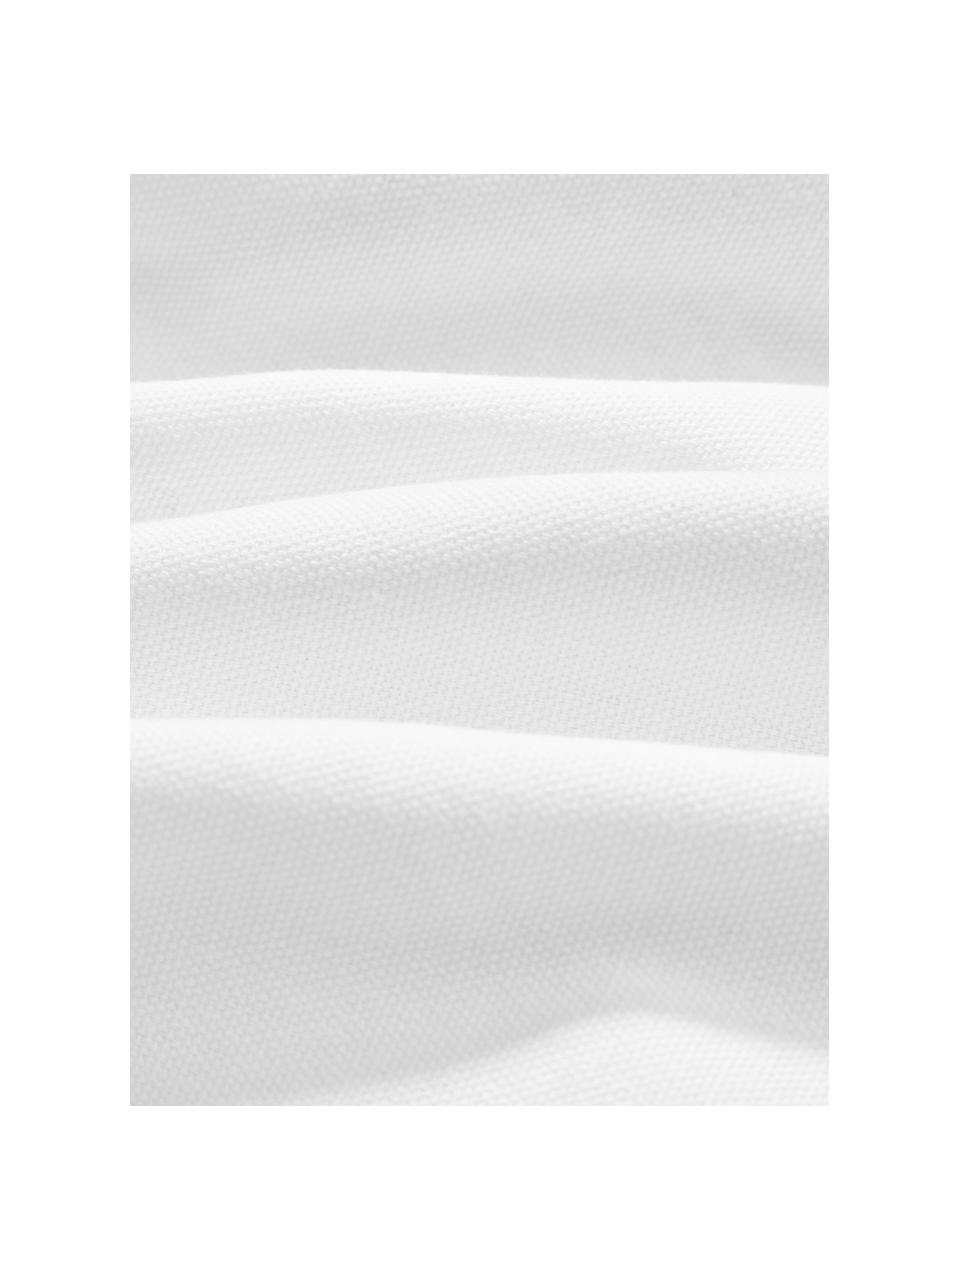 Baumwollperkal-Kissenhülle Faith mit getufteter Verzierung, 100% Baumwolle, Weiss, B 50 x L 50 cm